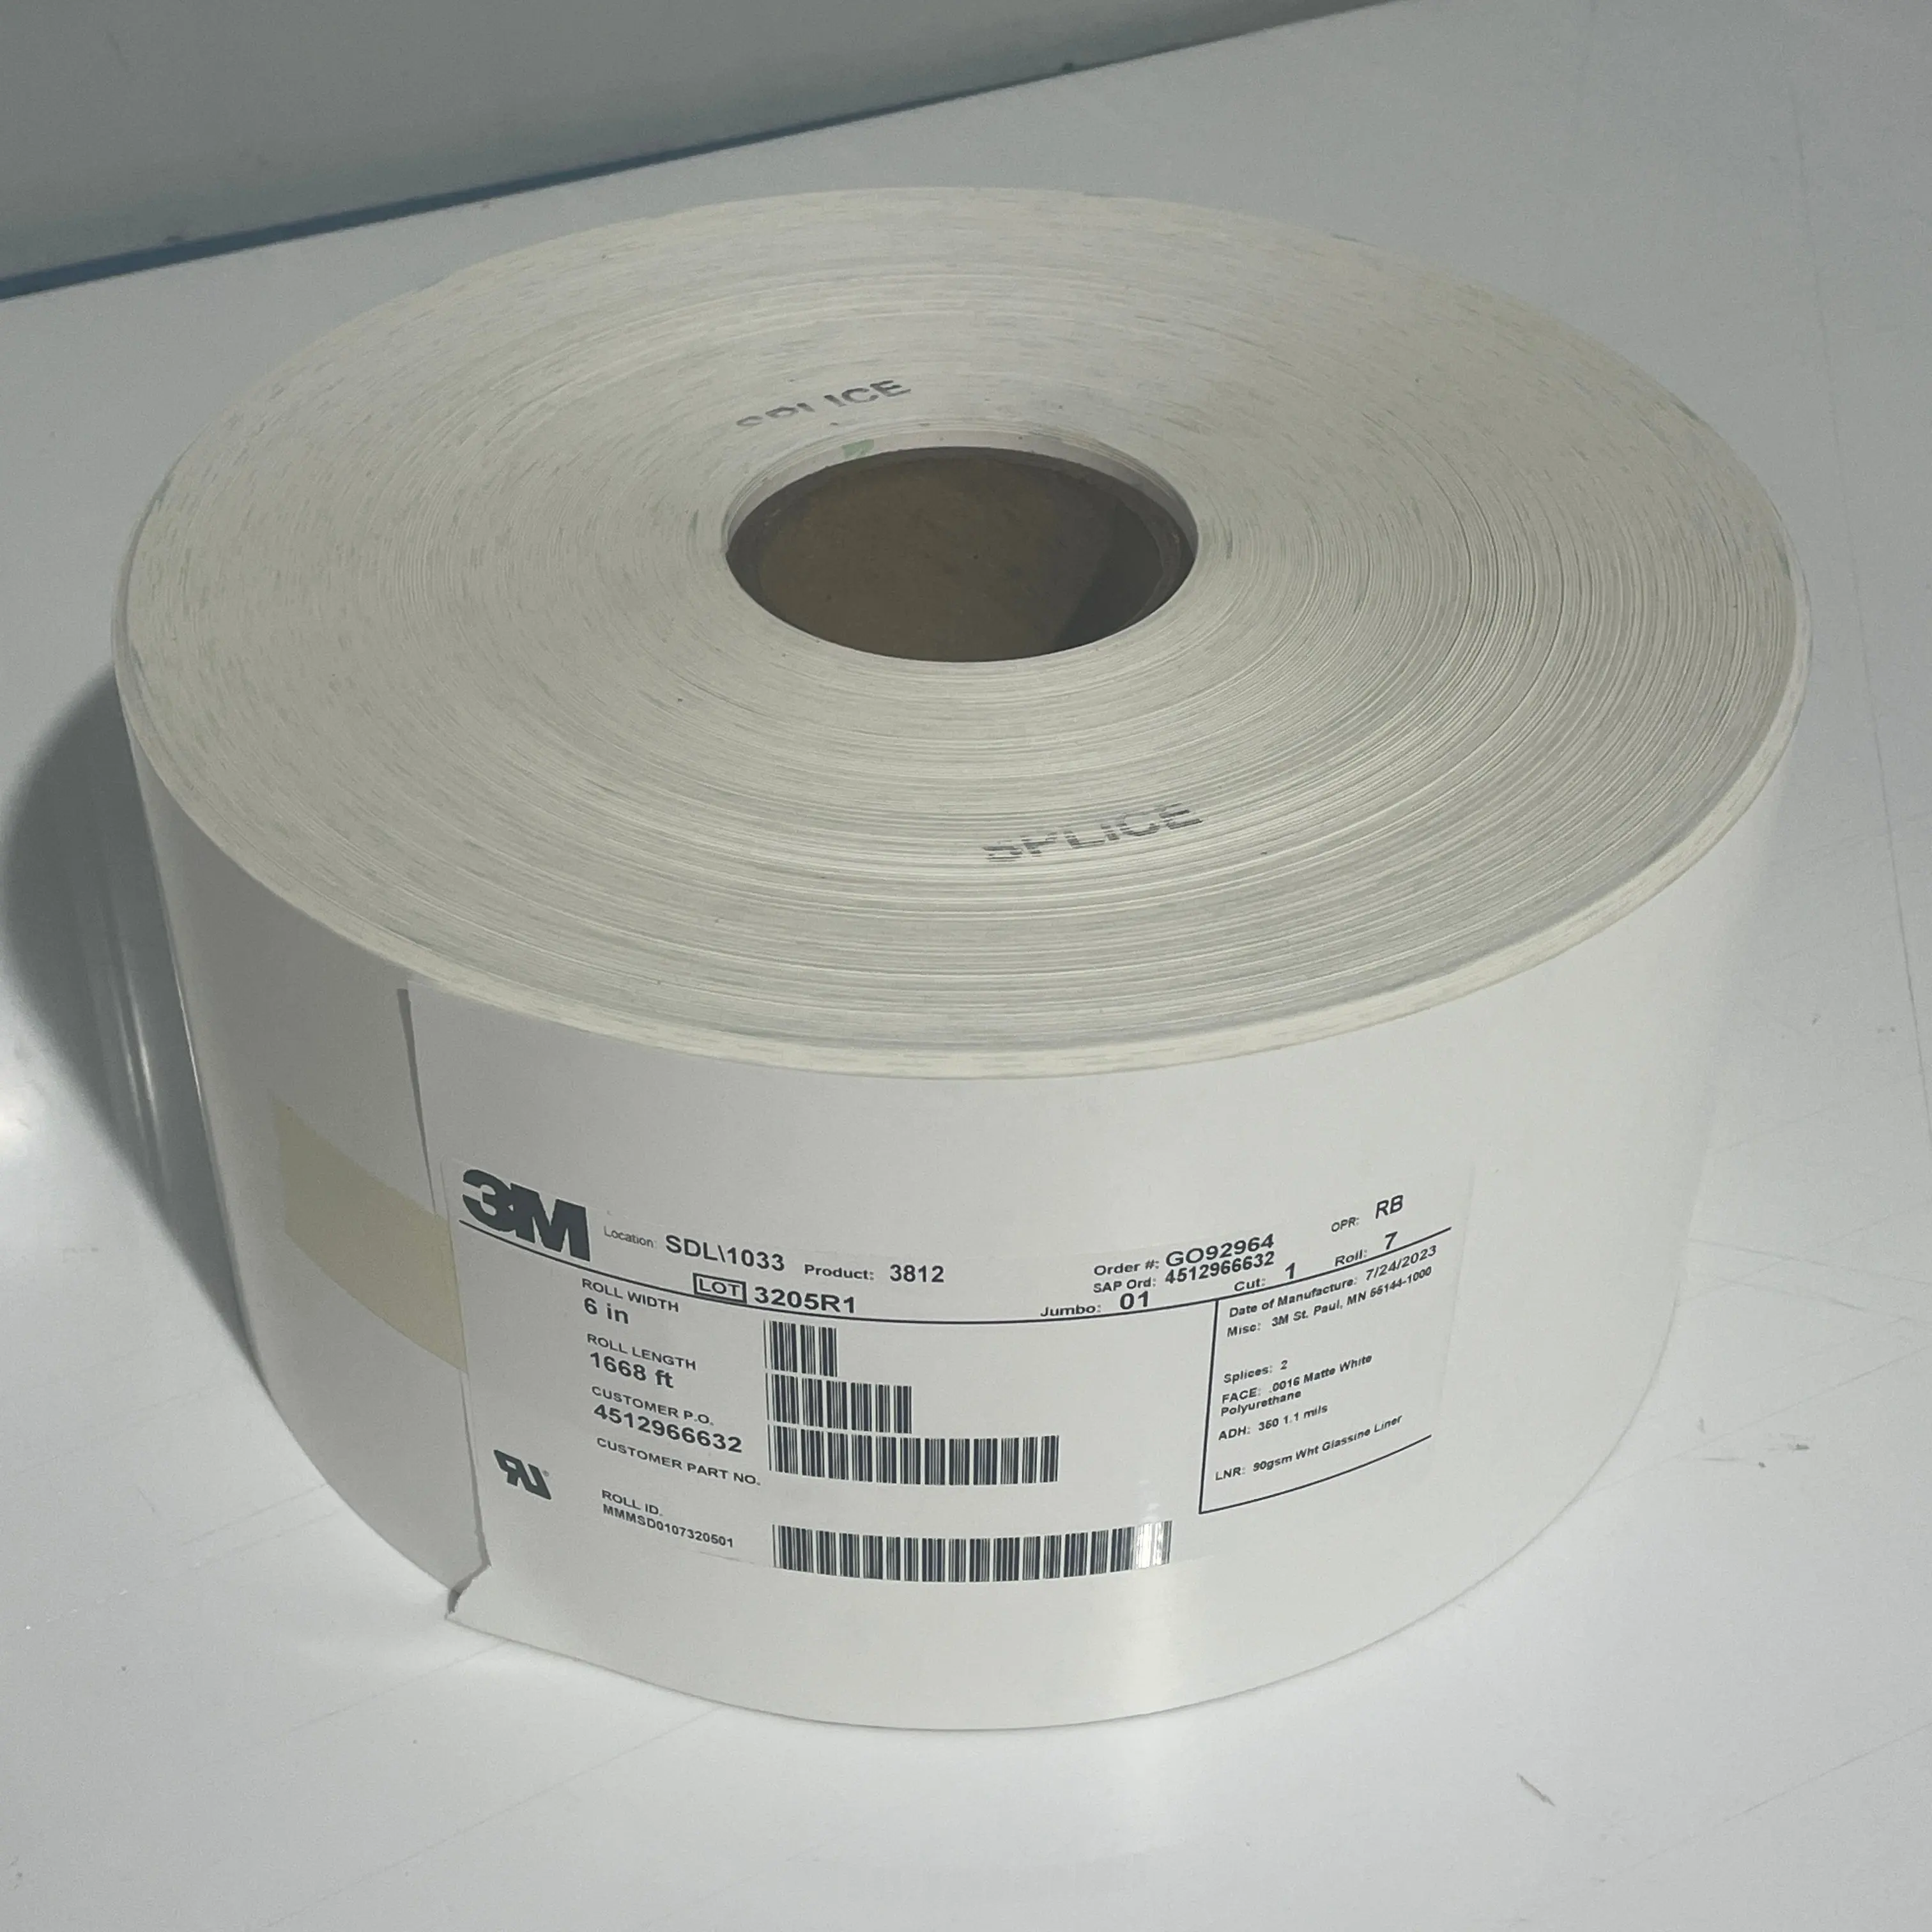 3M 3812 materiale per etichette in evidenza con manomissione stampa personalizzata a prova di garanzia a prova di manomissione adesivo di garanzia